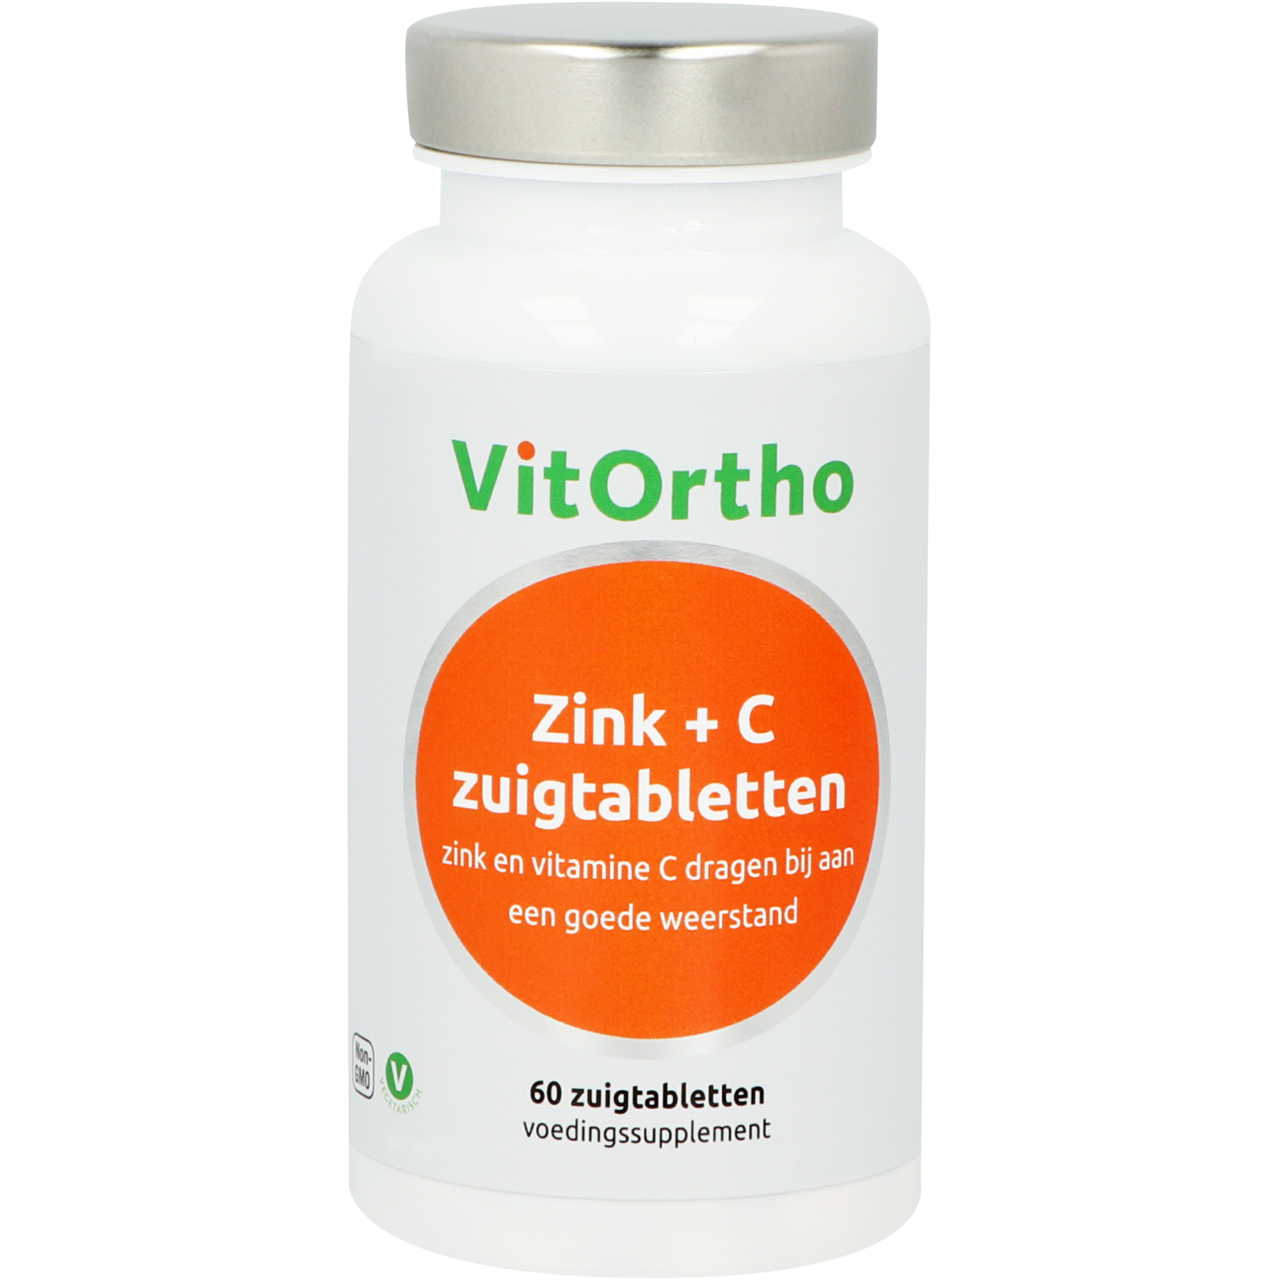 Zink + C zuigtabletten - 60 zt - Vitortho / NOW